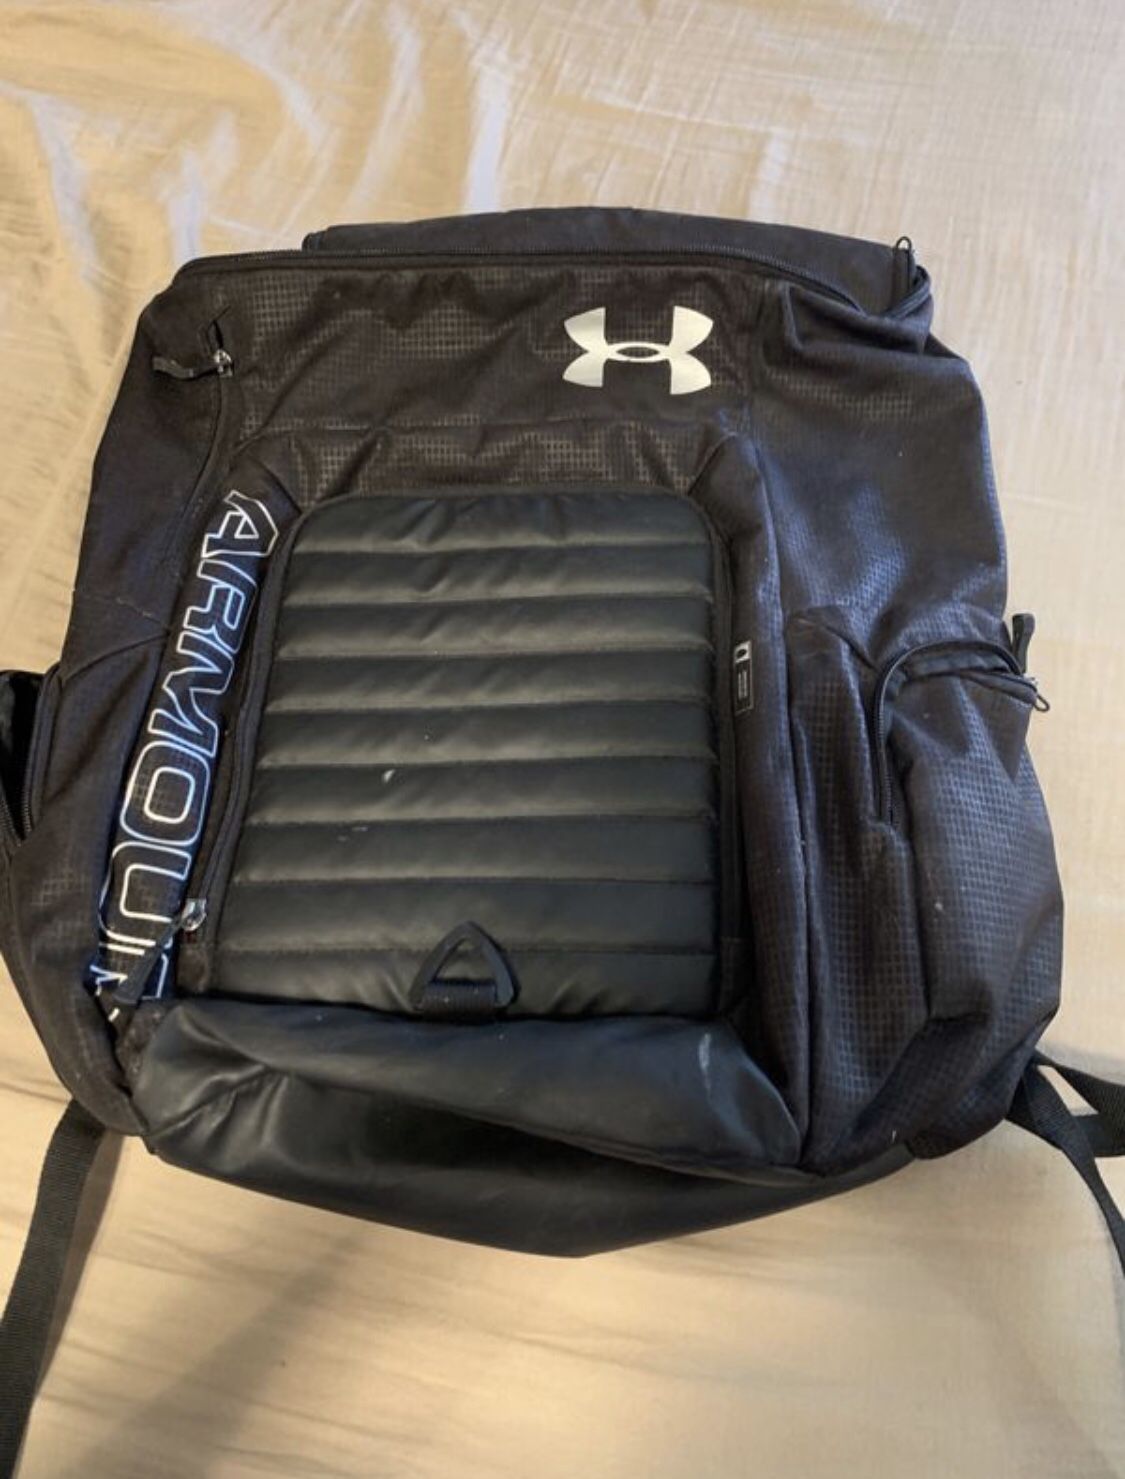 Sport backpacks